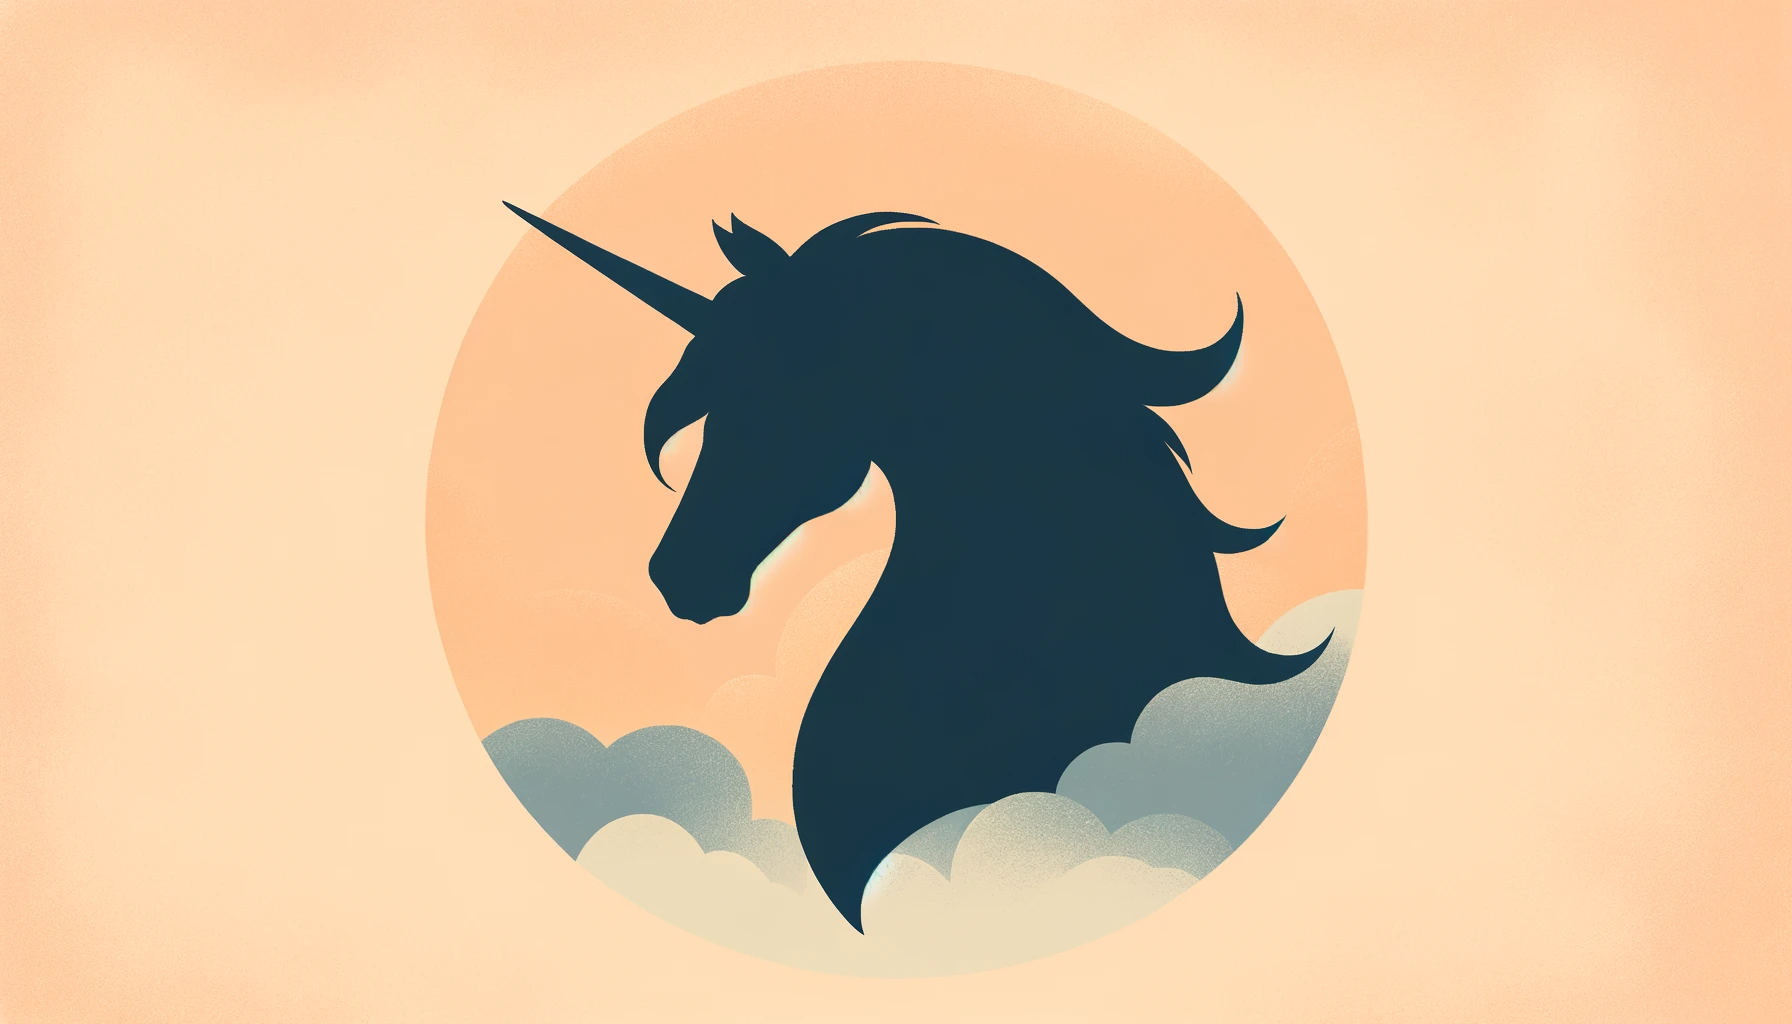 Rückblick und Ausblick auf die VC und Unicorns von Cowboy Ventures und unsere Interpretation für die PropTech und VC Branche